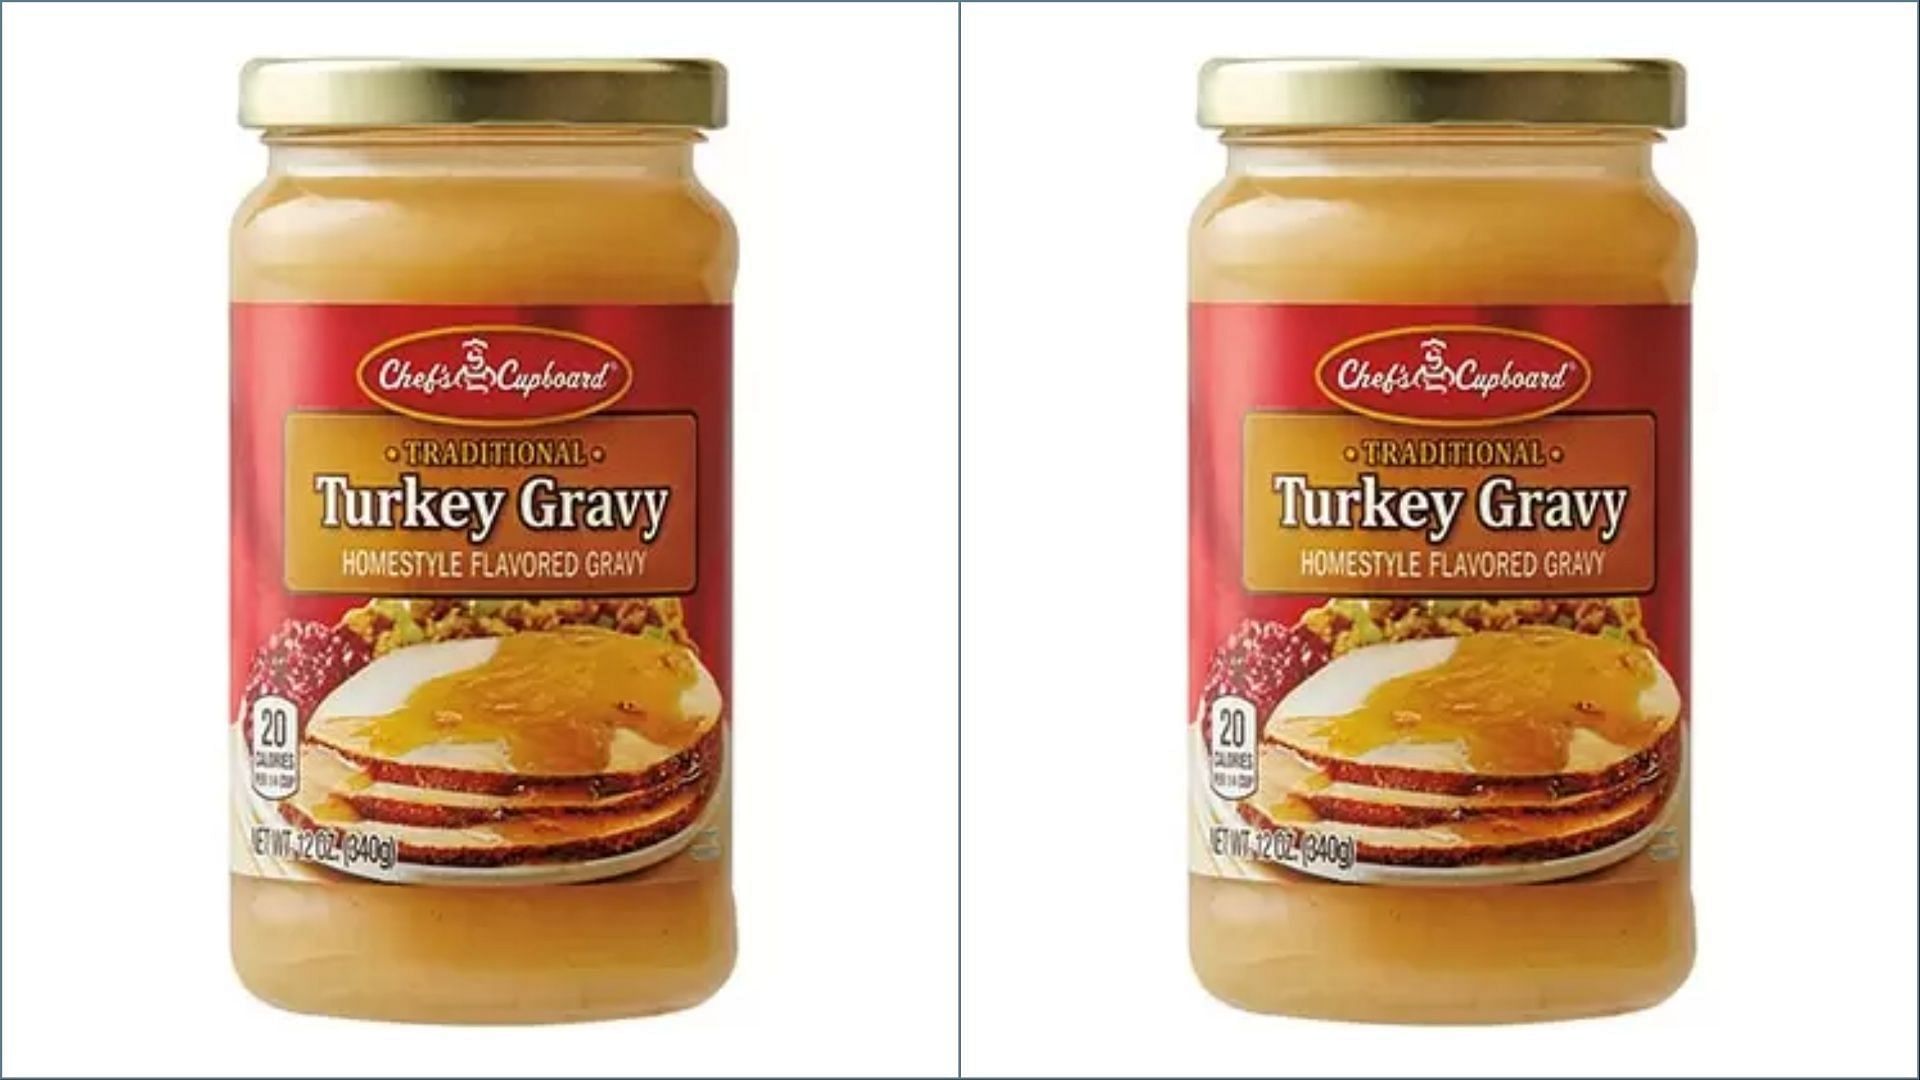 Chef&#039;s Cupboard Turkey Gravy (Image via Aldi)